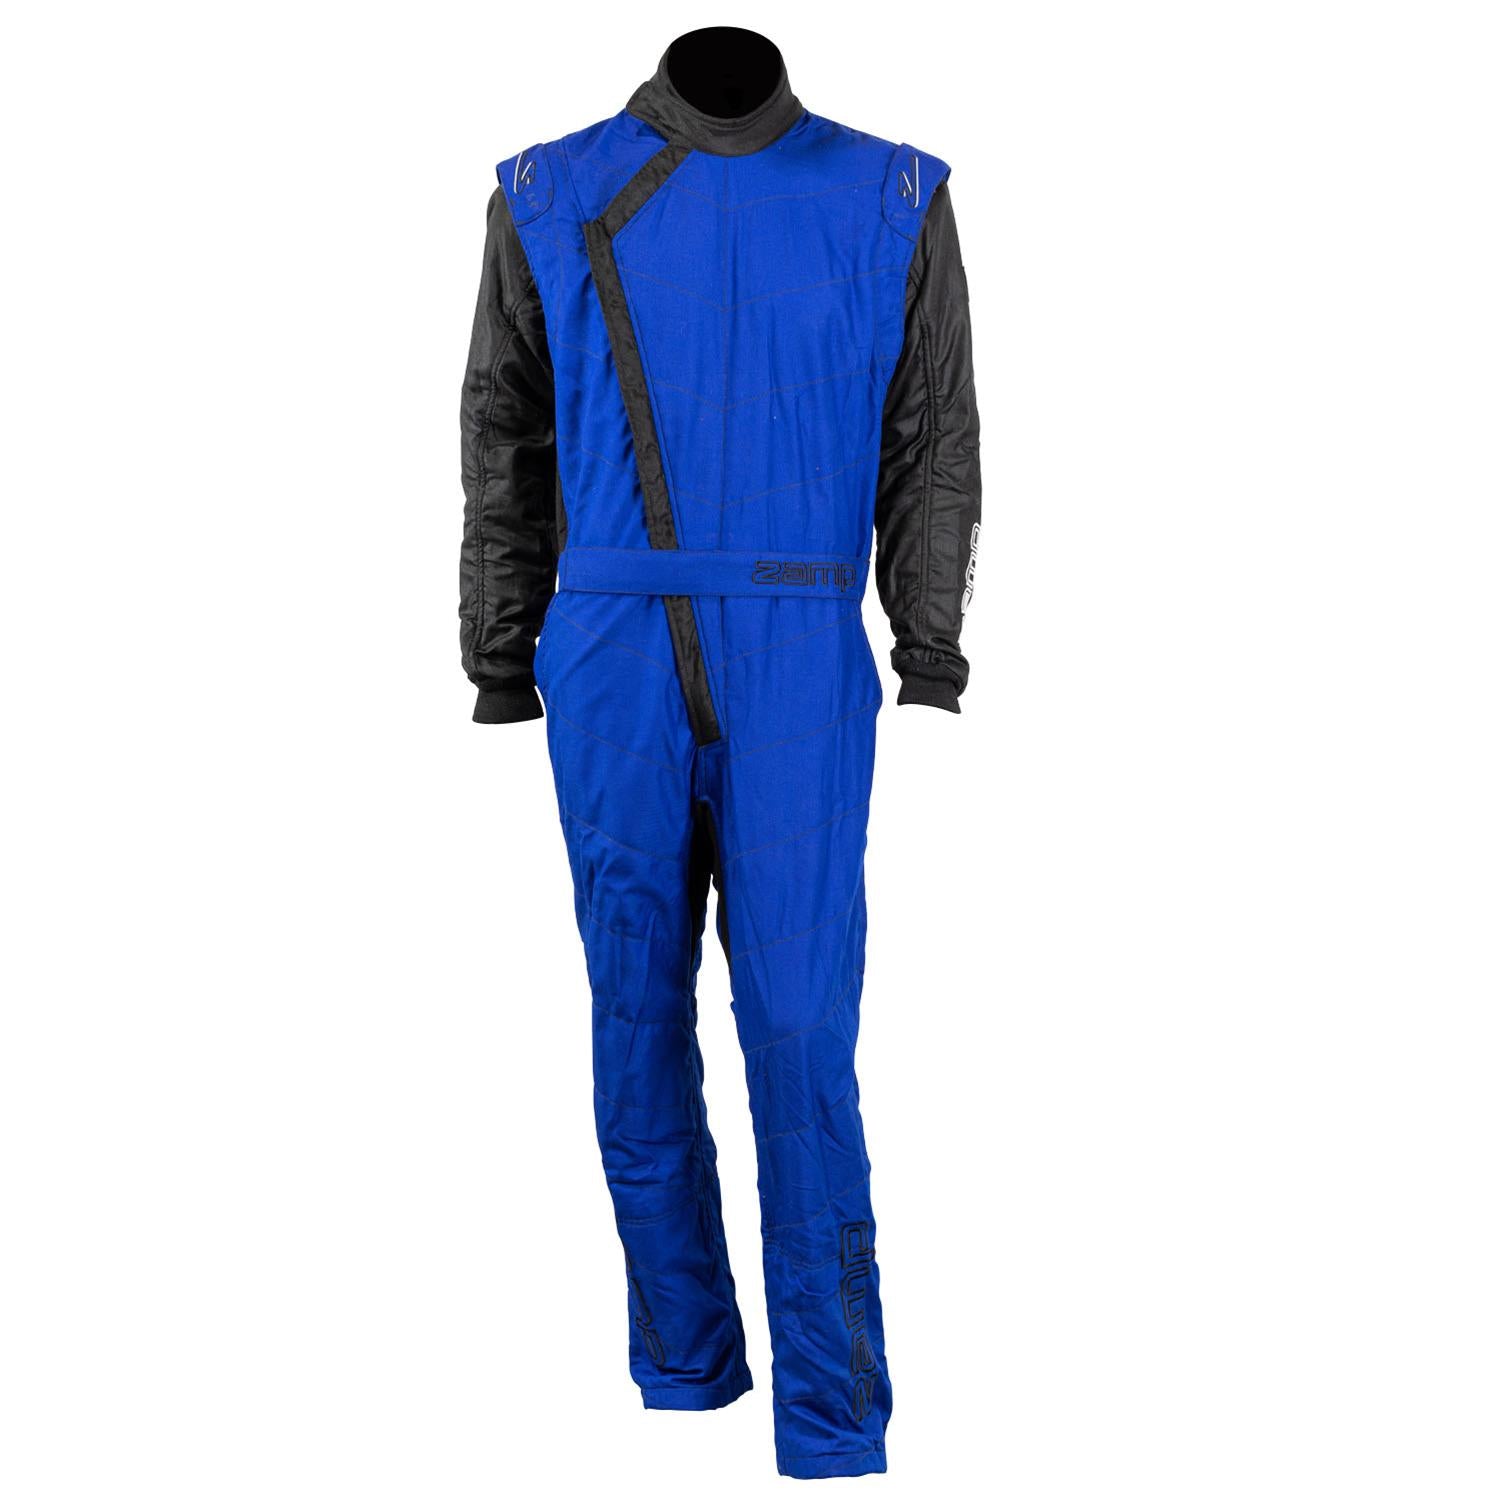 ZAMP Racing ZR-40 Race Suit Blue R07C04S